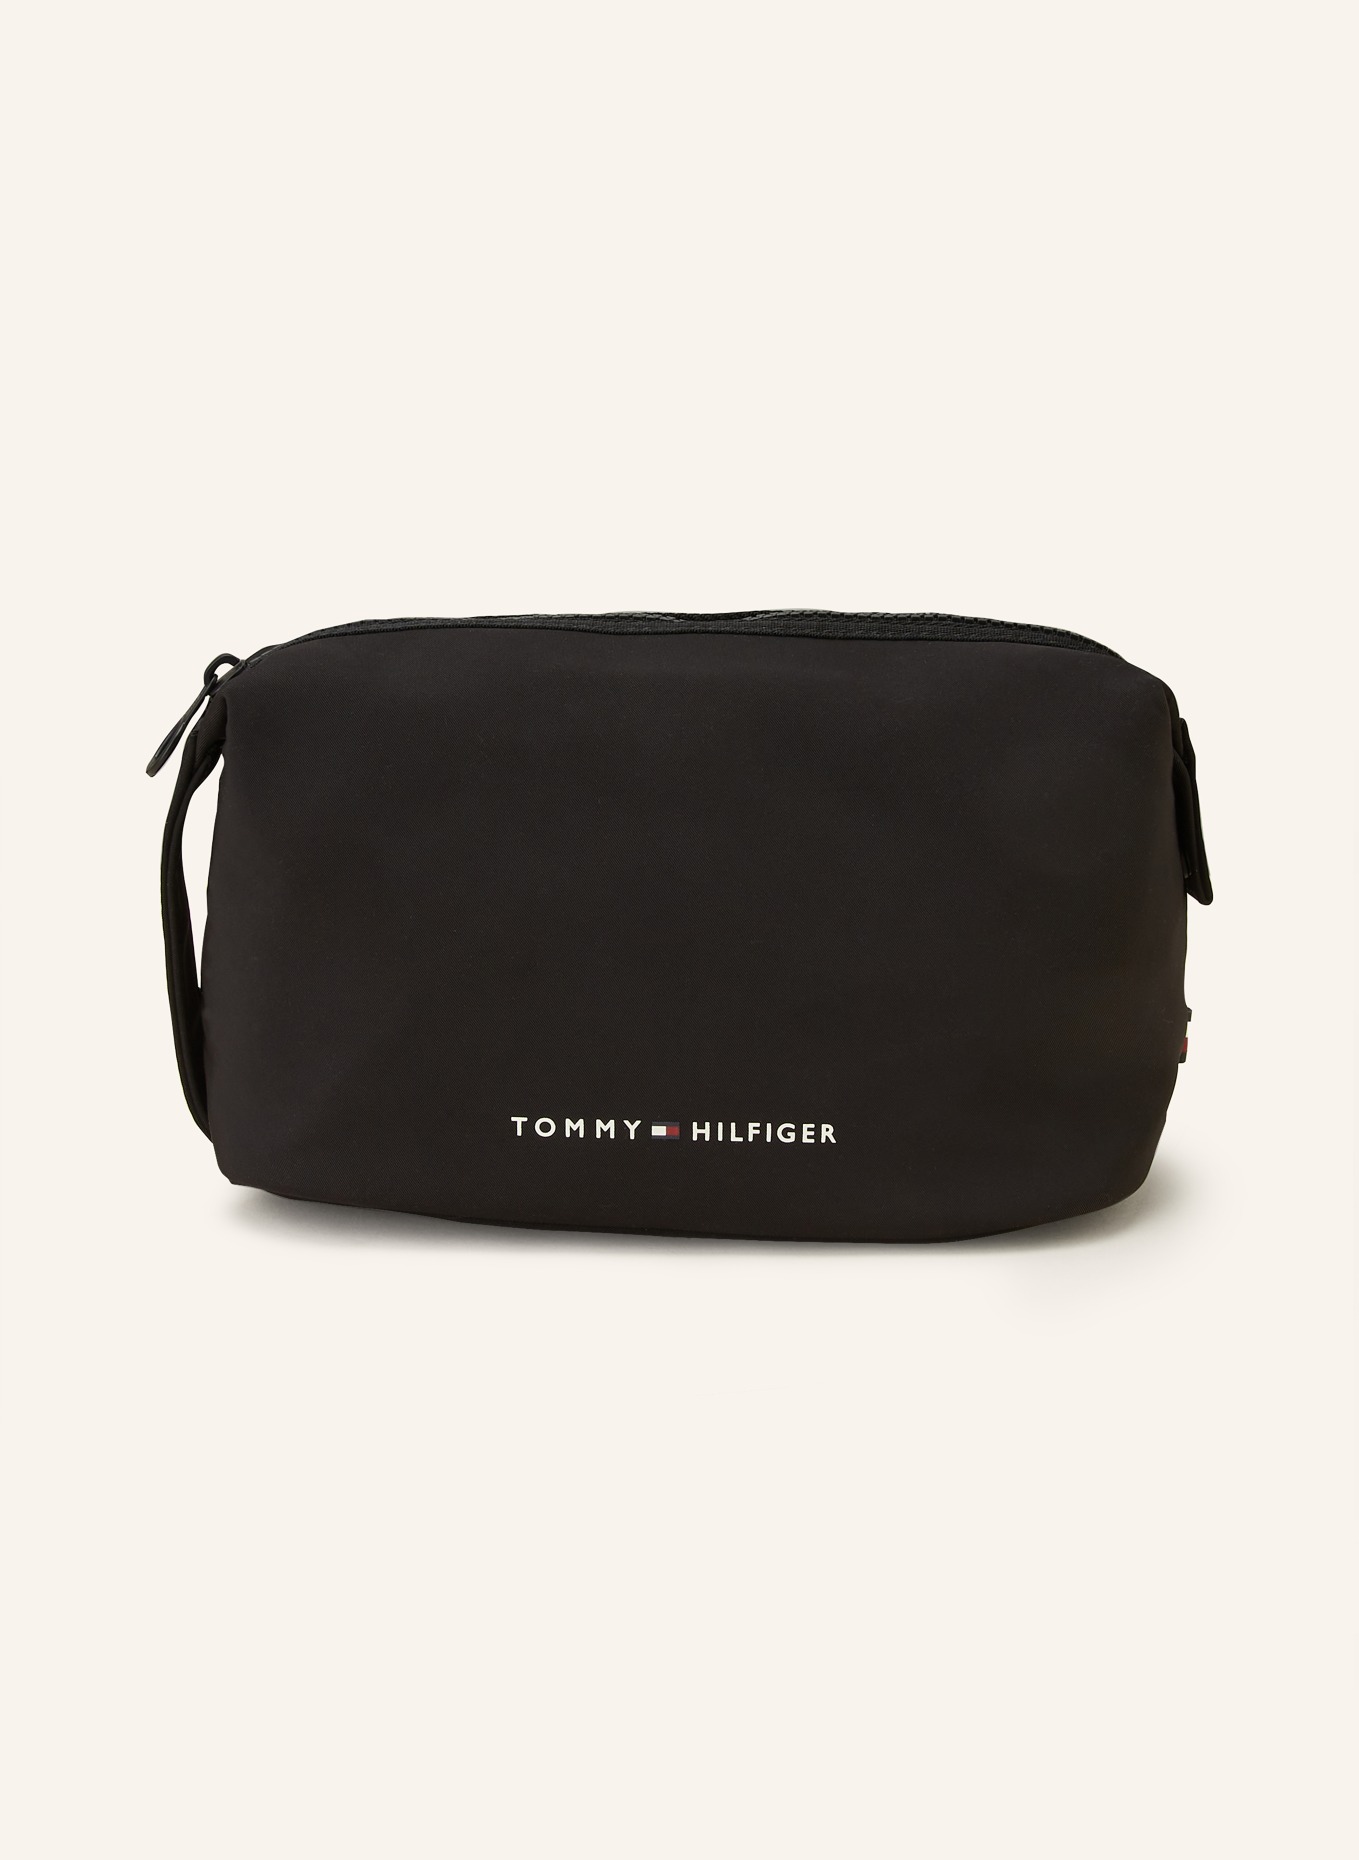 TOMMY HILFIGER Toiletry bag SKYLINE, Color: BLACK (Image 1)